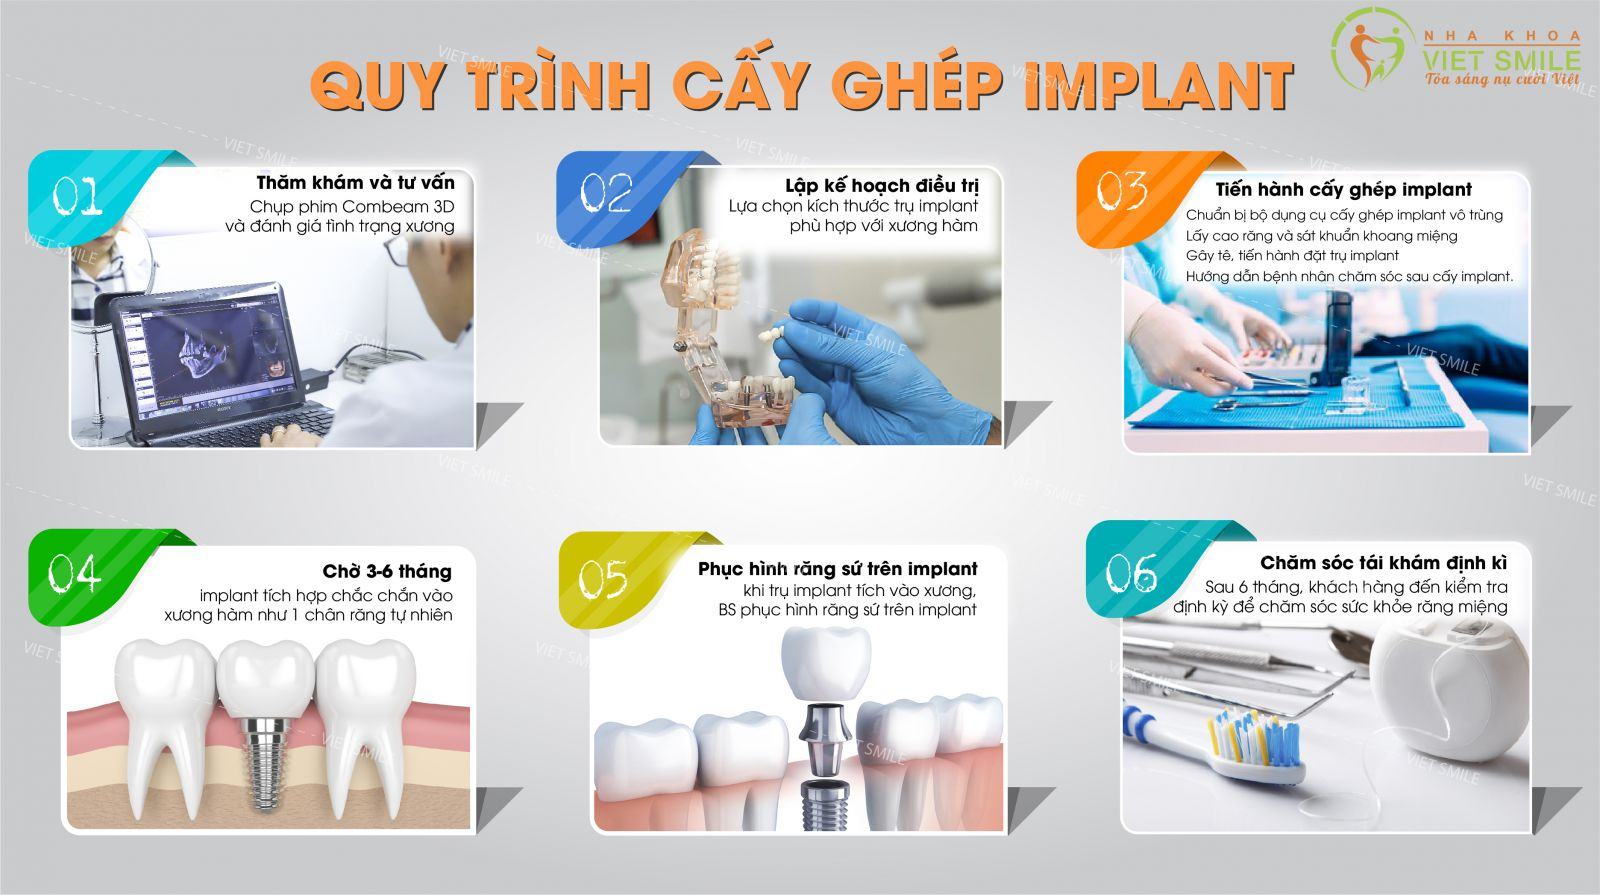 Quy trình cấy ghép implant theo tiêu chuẩn quốc tế được áp dụng tại nha khoa việt smile